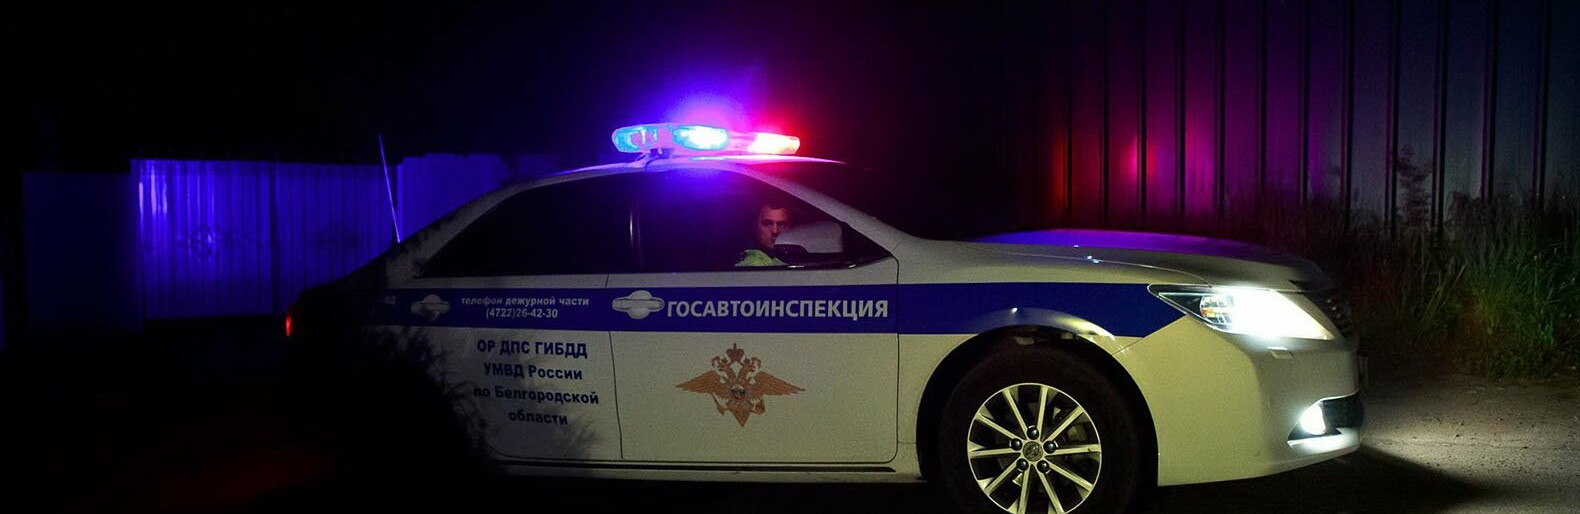 За первые три дня нового года белгородские гаишники поймали 90 пьяных водителей